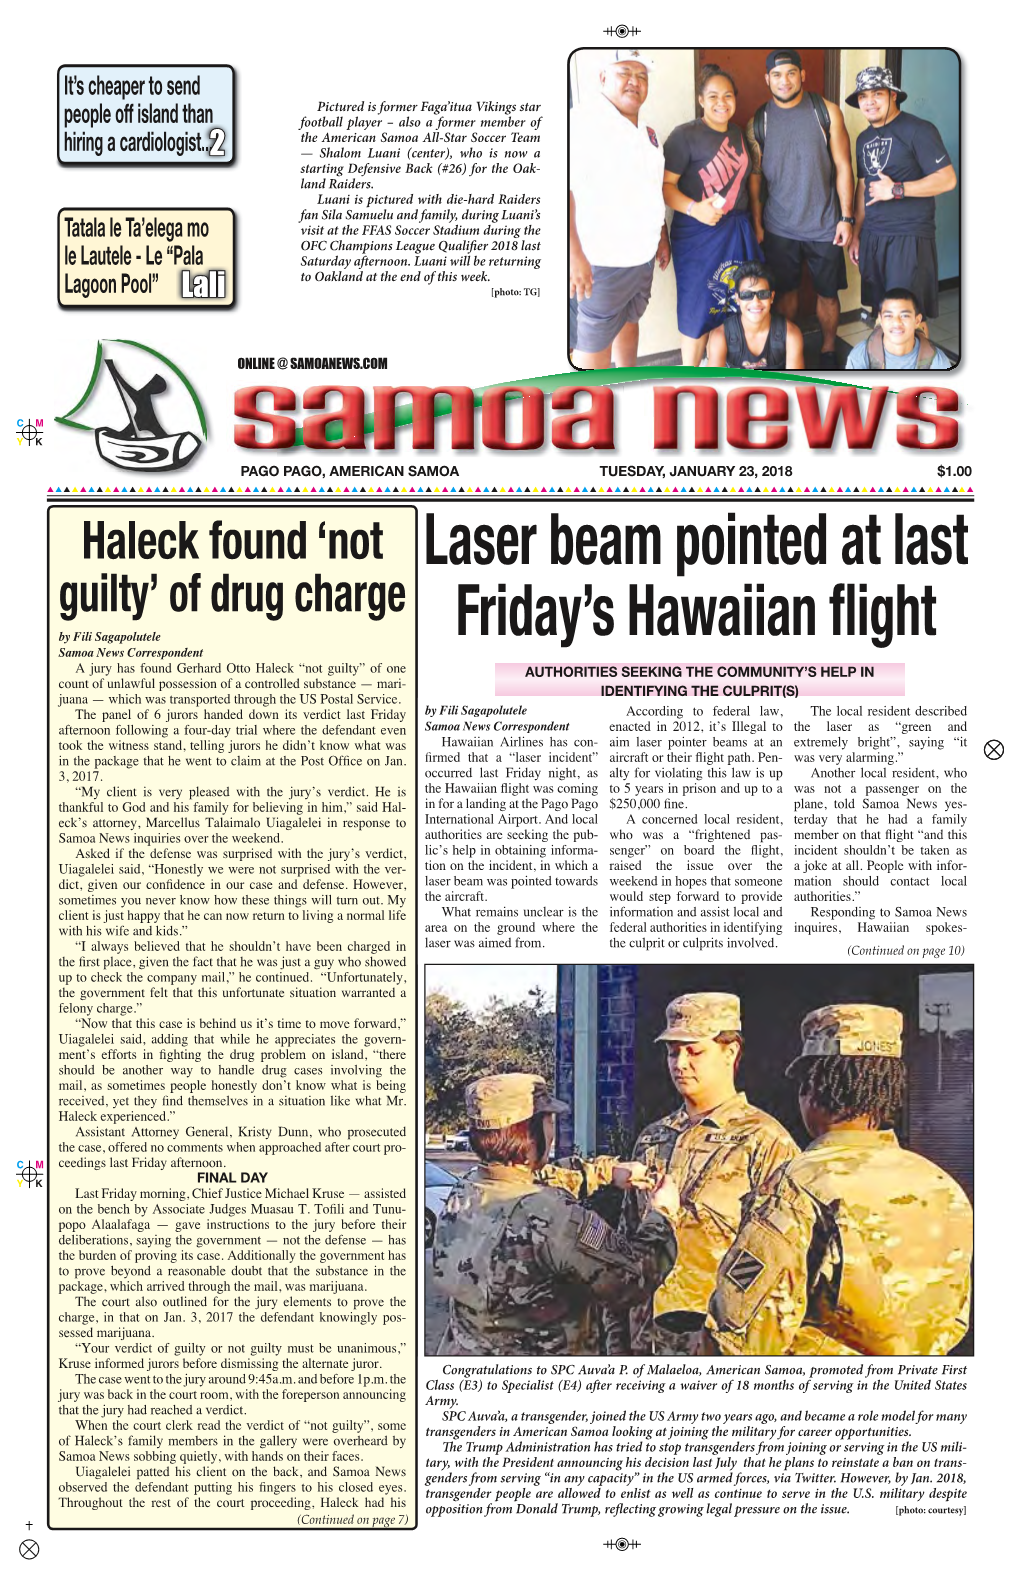 Laser Beam Pointed at Last Friday's Hawaiian Flight